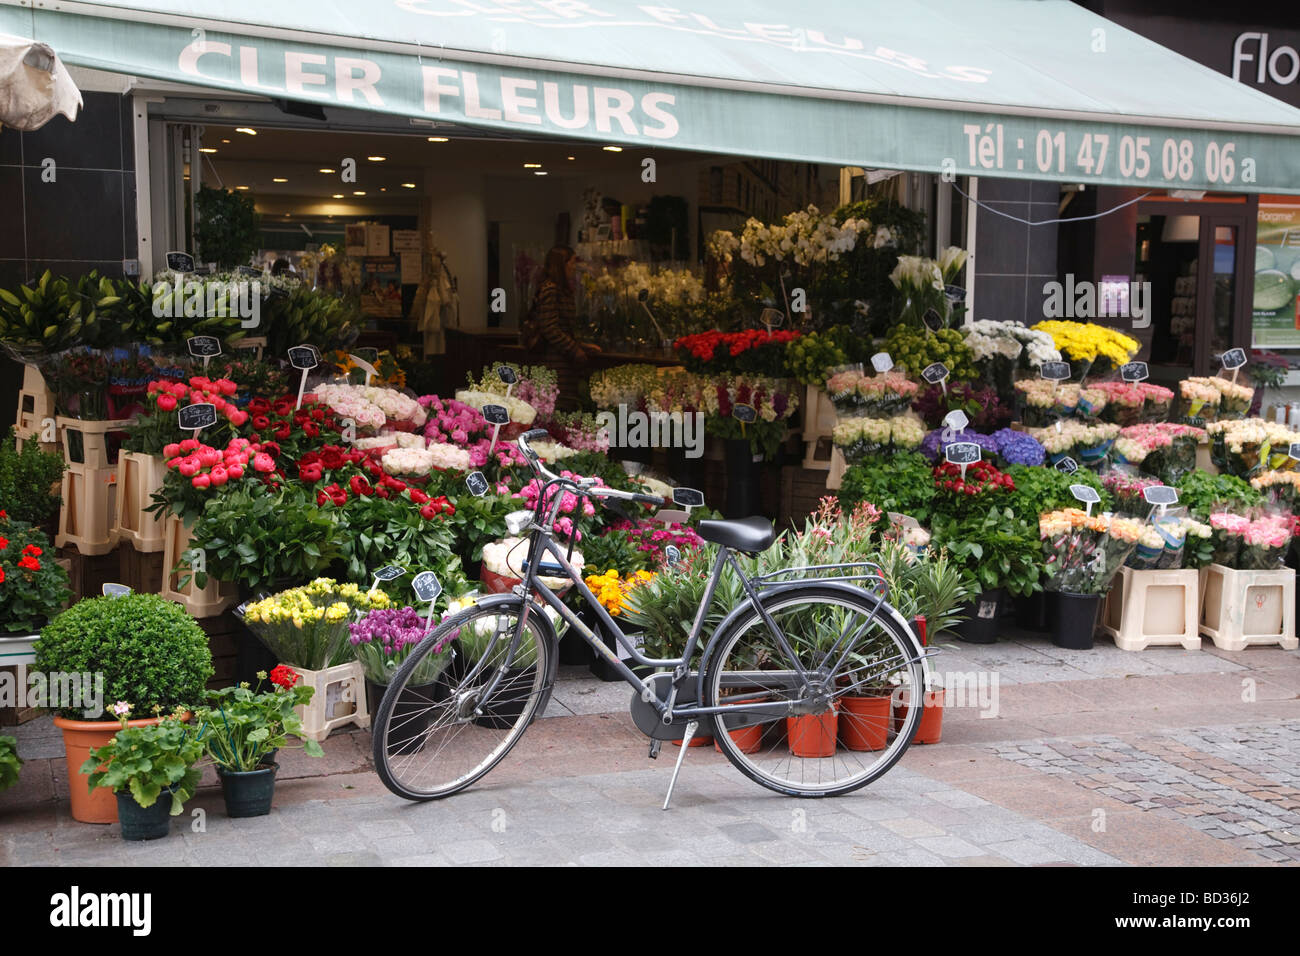 Un support à vélo à l'extérieur d'un étal de fleurs sur la Rue Cler à Paris, France Banque D'Images